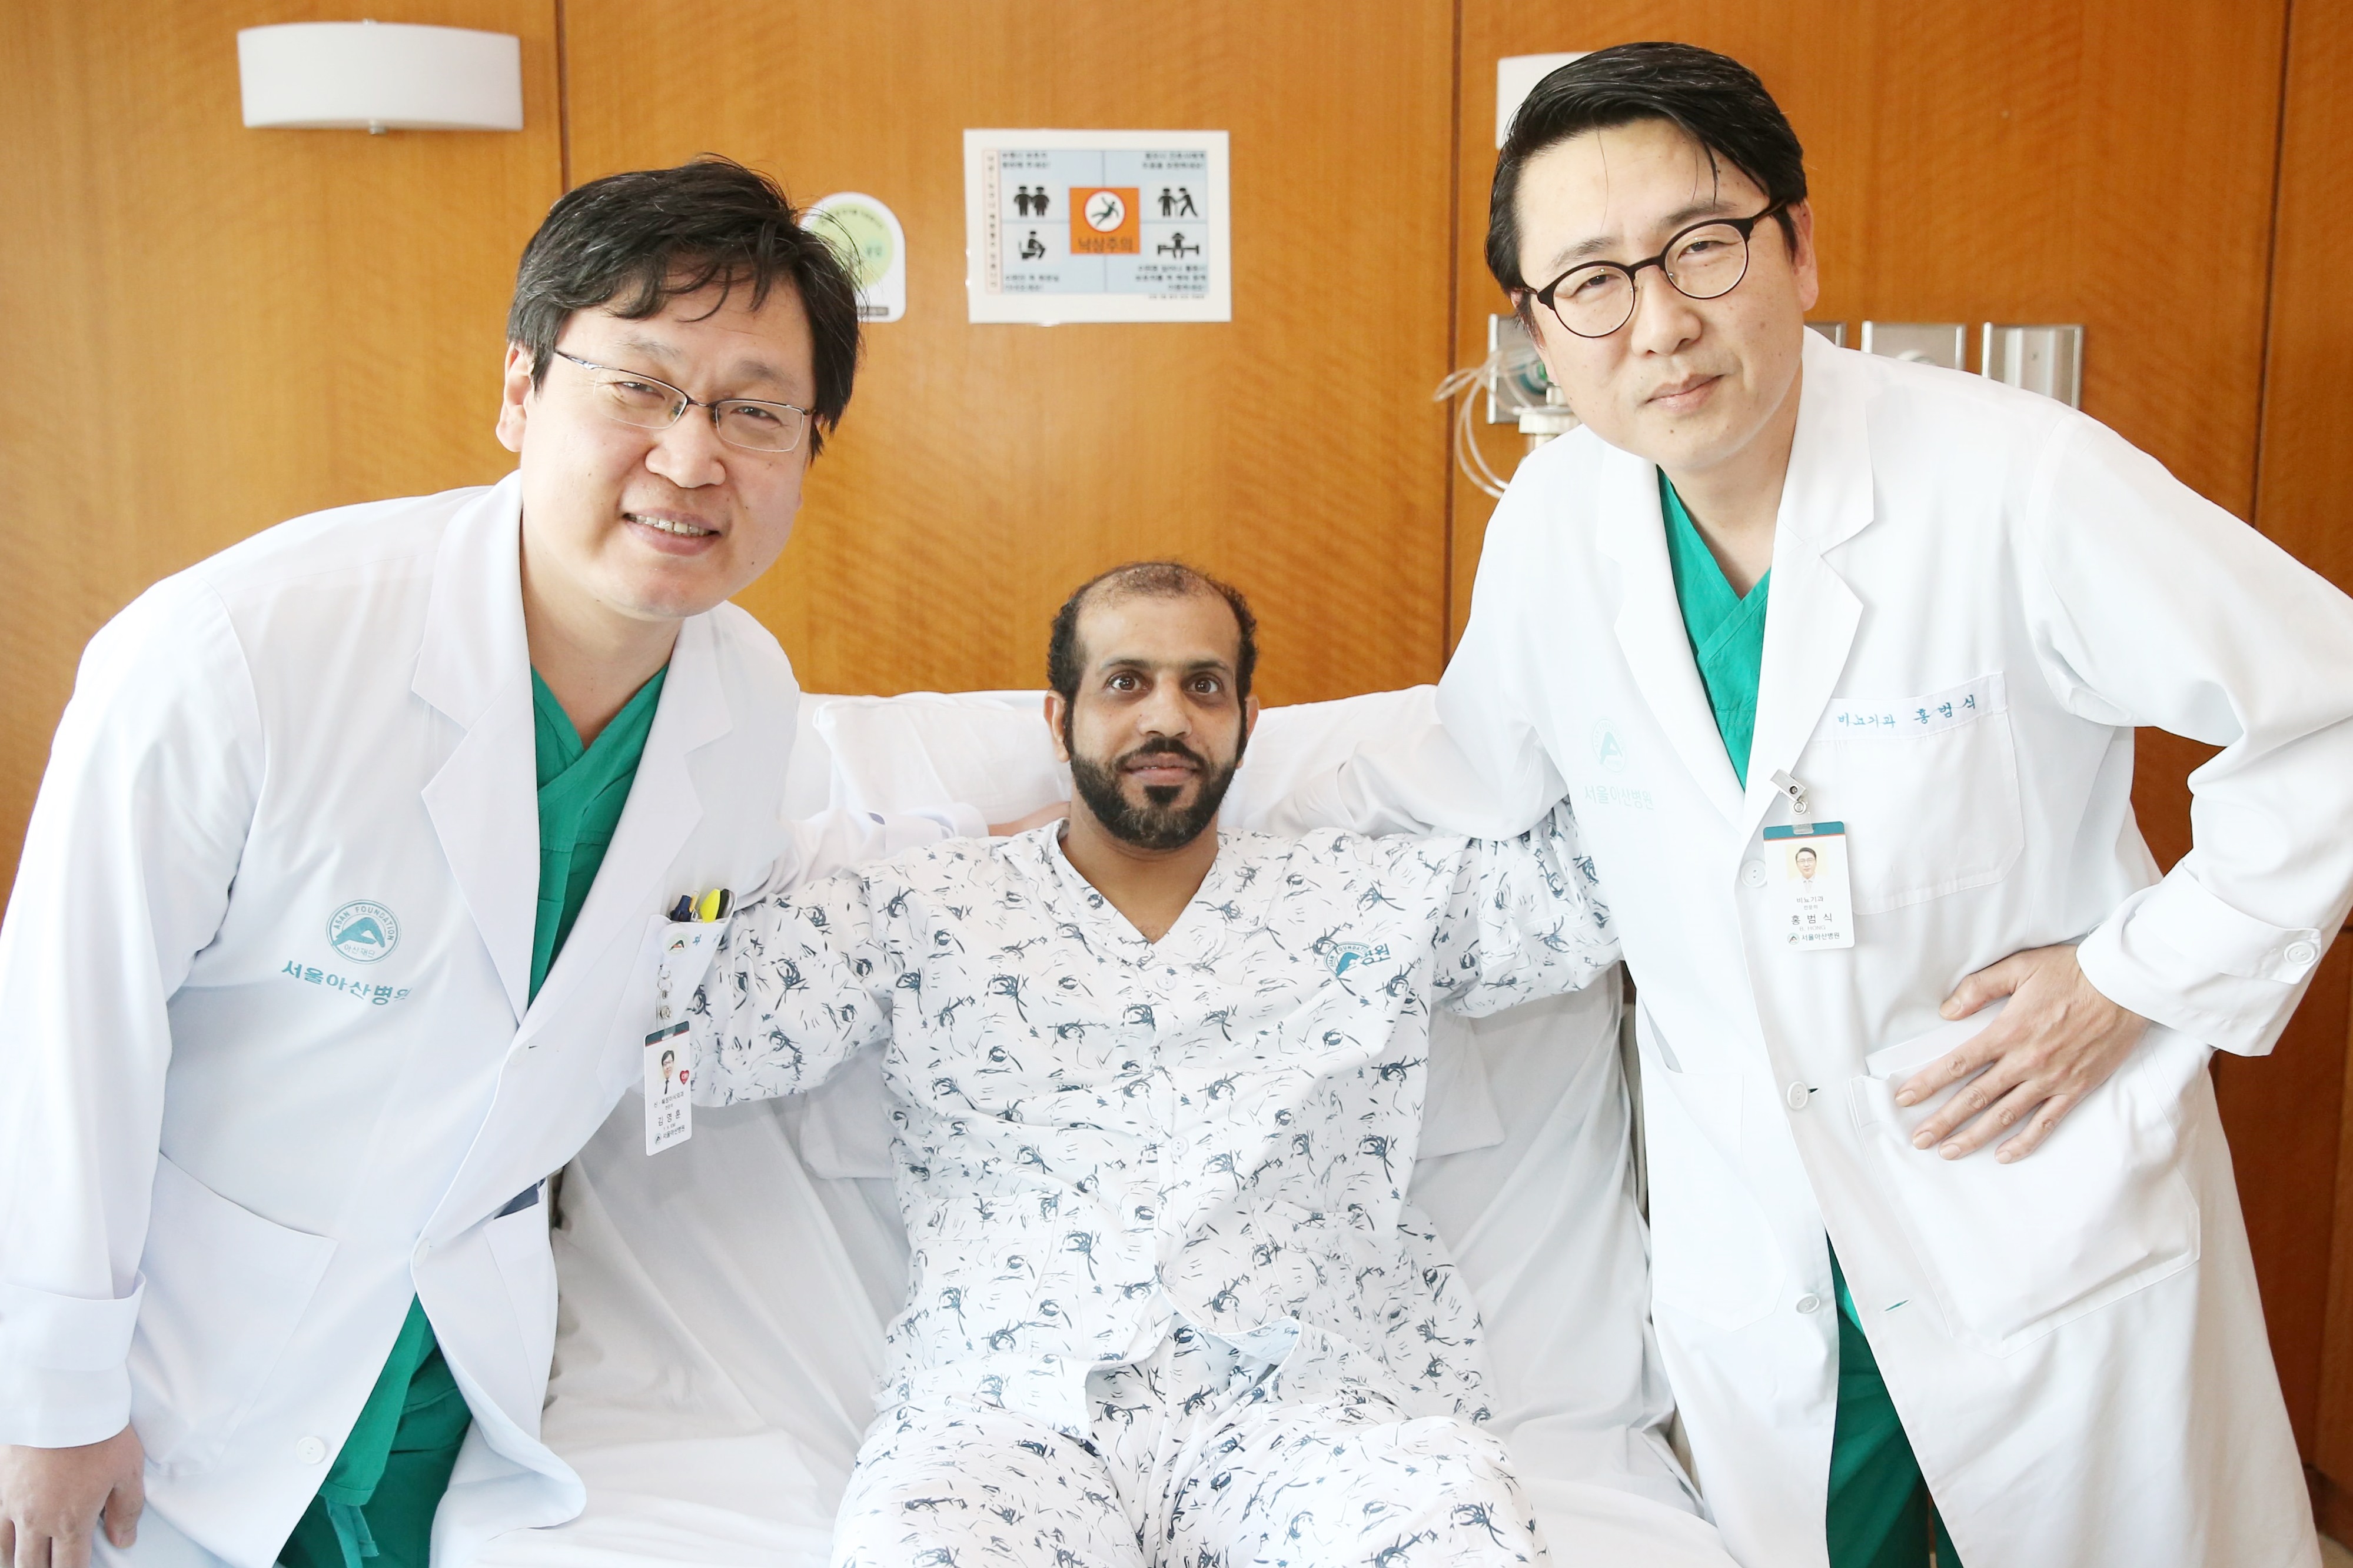 Пациент из ОАЭ с диагнозом рак почечной лоханки обрел вторую жизнь после аутогенной трансплантации почки